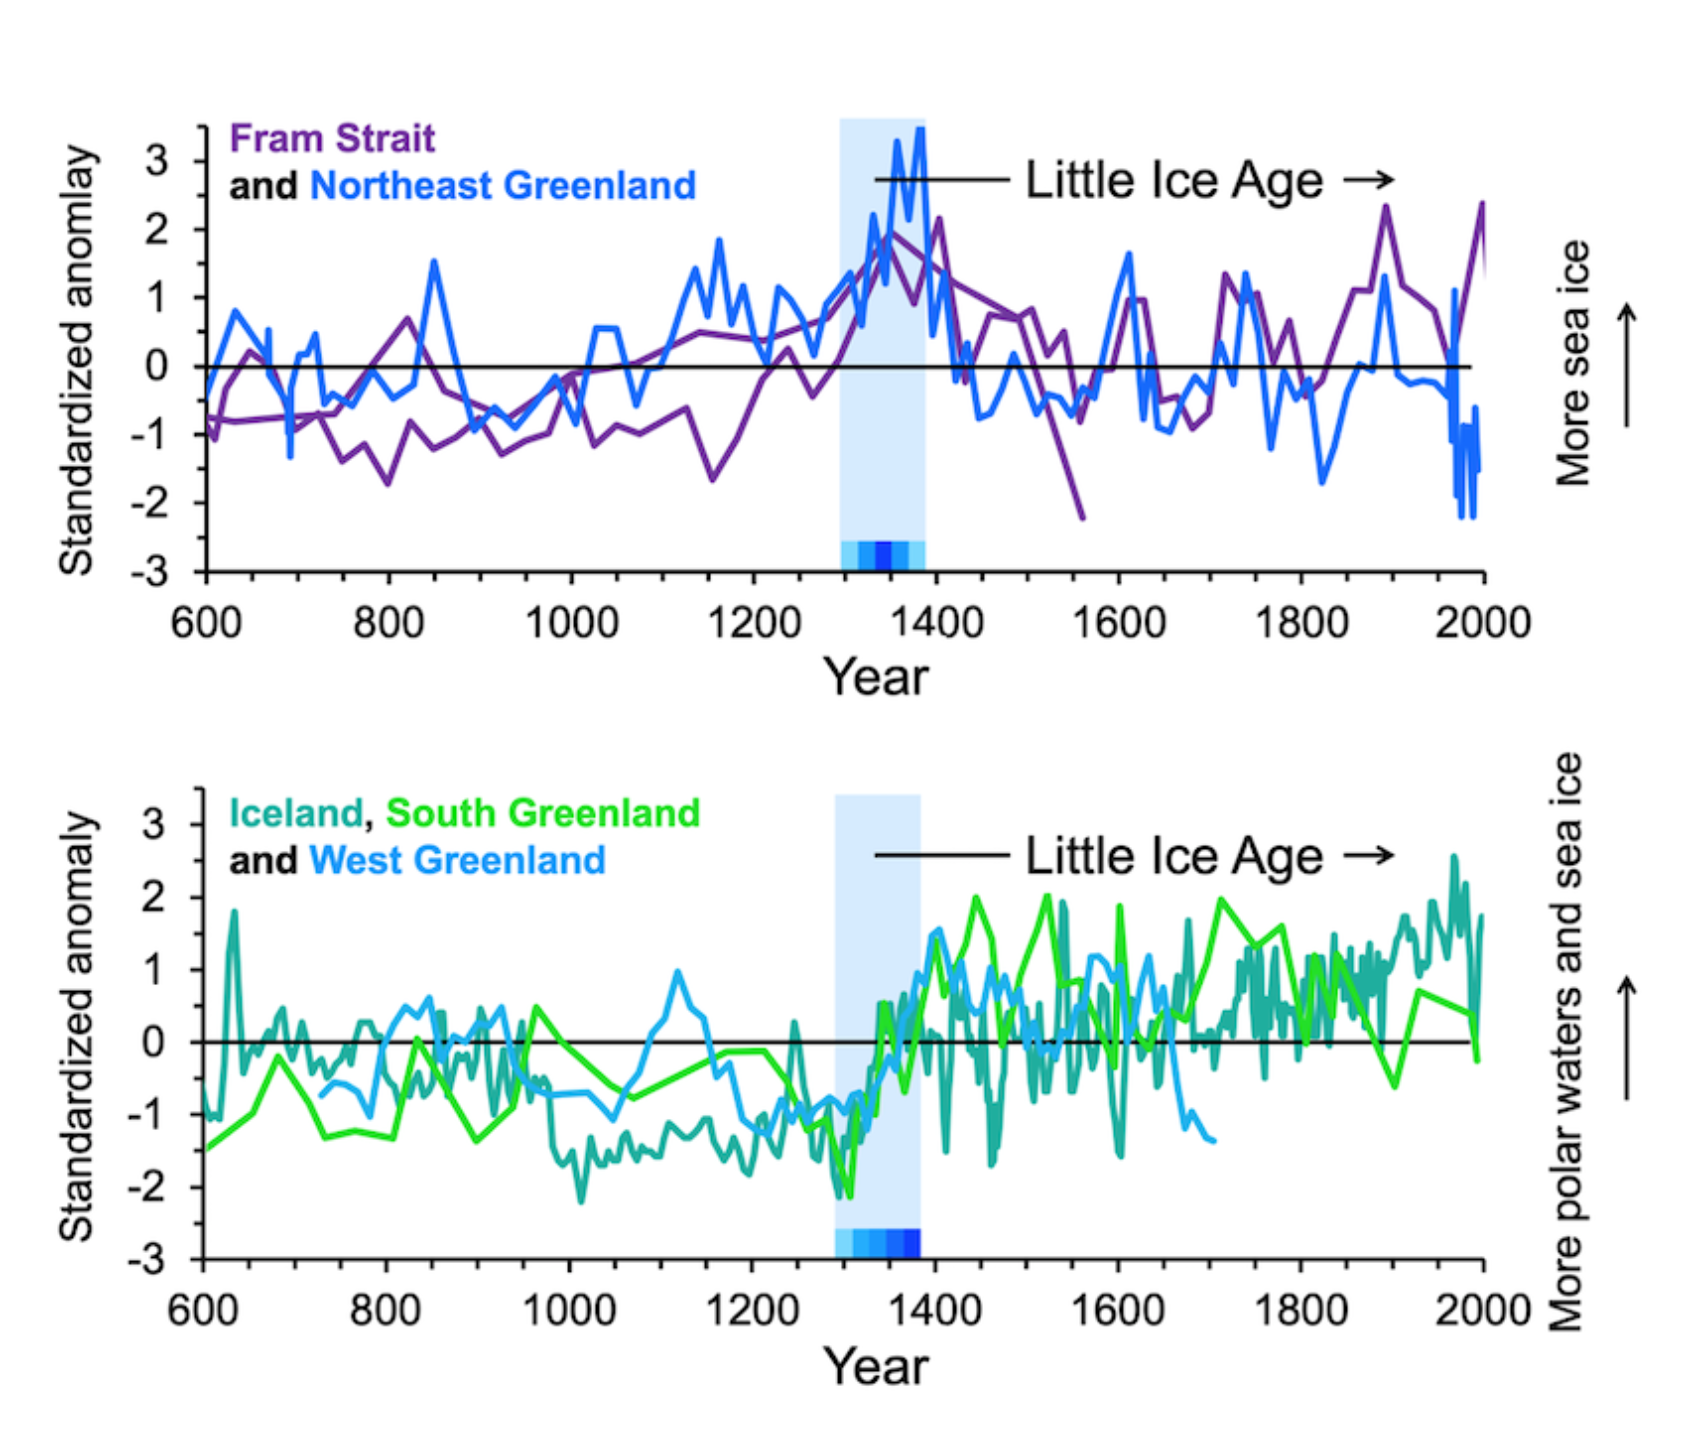 Miles et al. 2020, Grafane viser utbreing av sjøis og polare vassmassar ved Framstredet, Grønland og Island. Fargane i grafane samsvarer med prikkane i kartet over. Den blå søyla markerer 1300-talet. Merk at mengda sjøis ved austkysten av Grønland er særleg stor på 1300-talet., 2 sea ice trigger1, , 